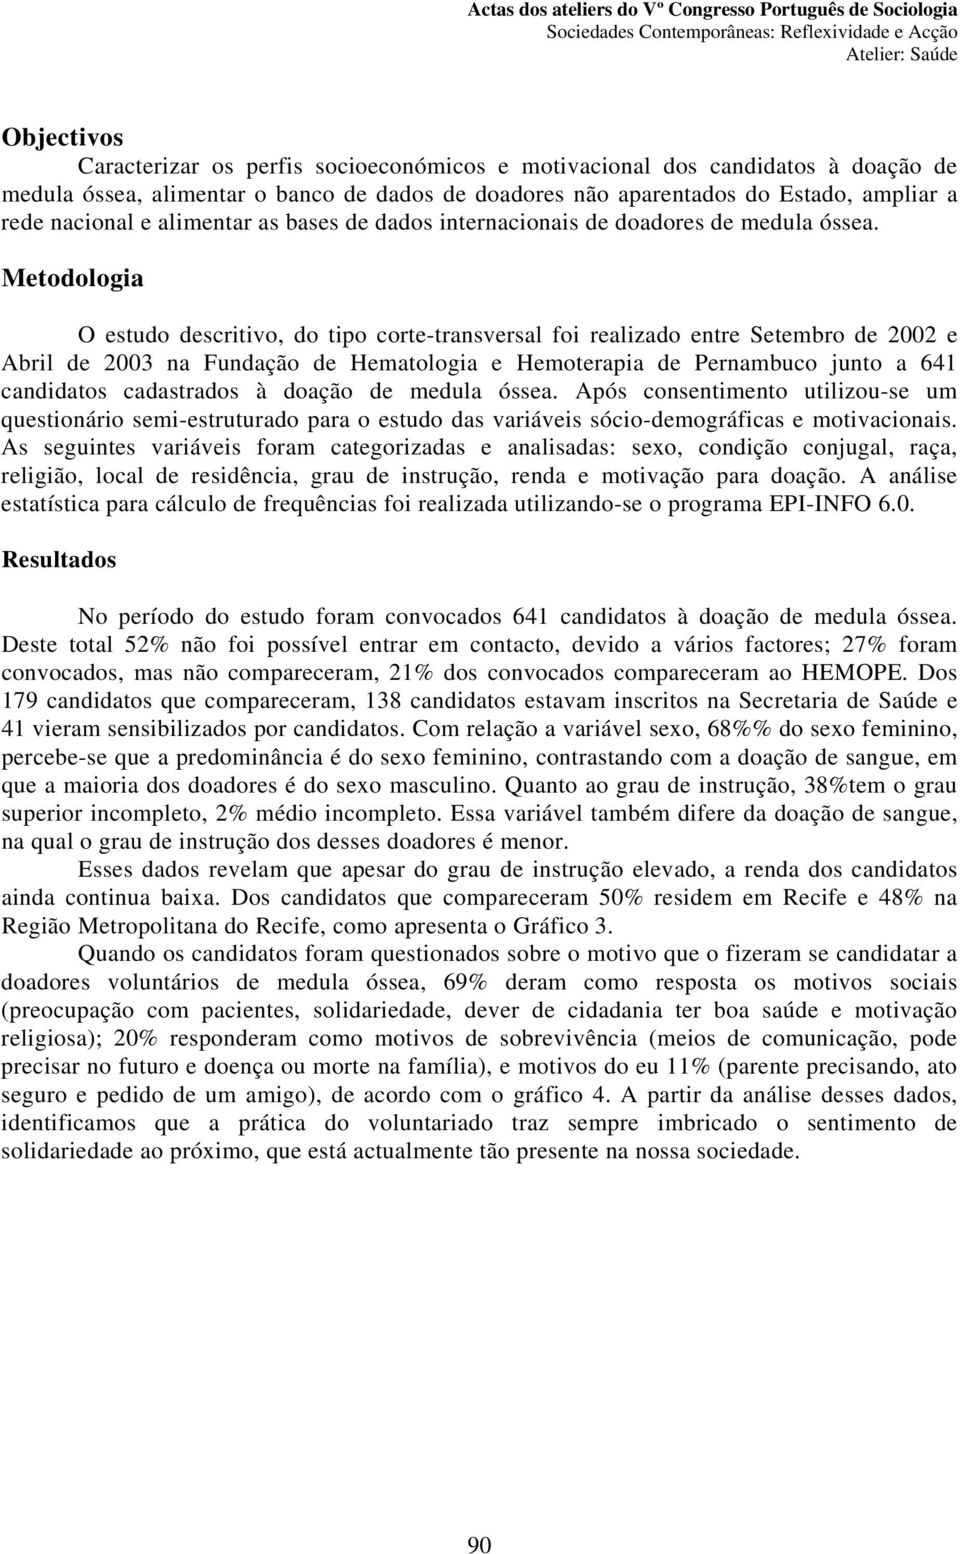 Metodologia O estudo descritivo, do tipo corte-transversal foi realizado entre Setembro de 2002 e Abril de 2003 na Fundação de Hematologia e Hemoterapia de Pernambuco junto a 641 candidatos